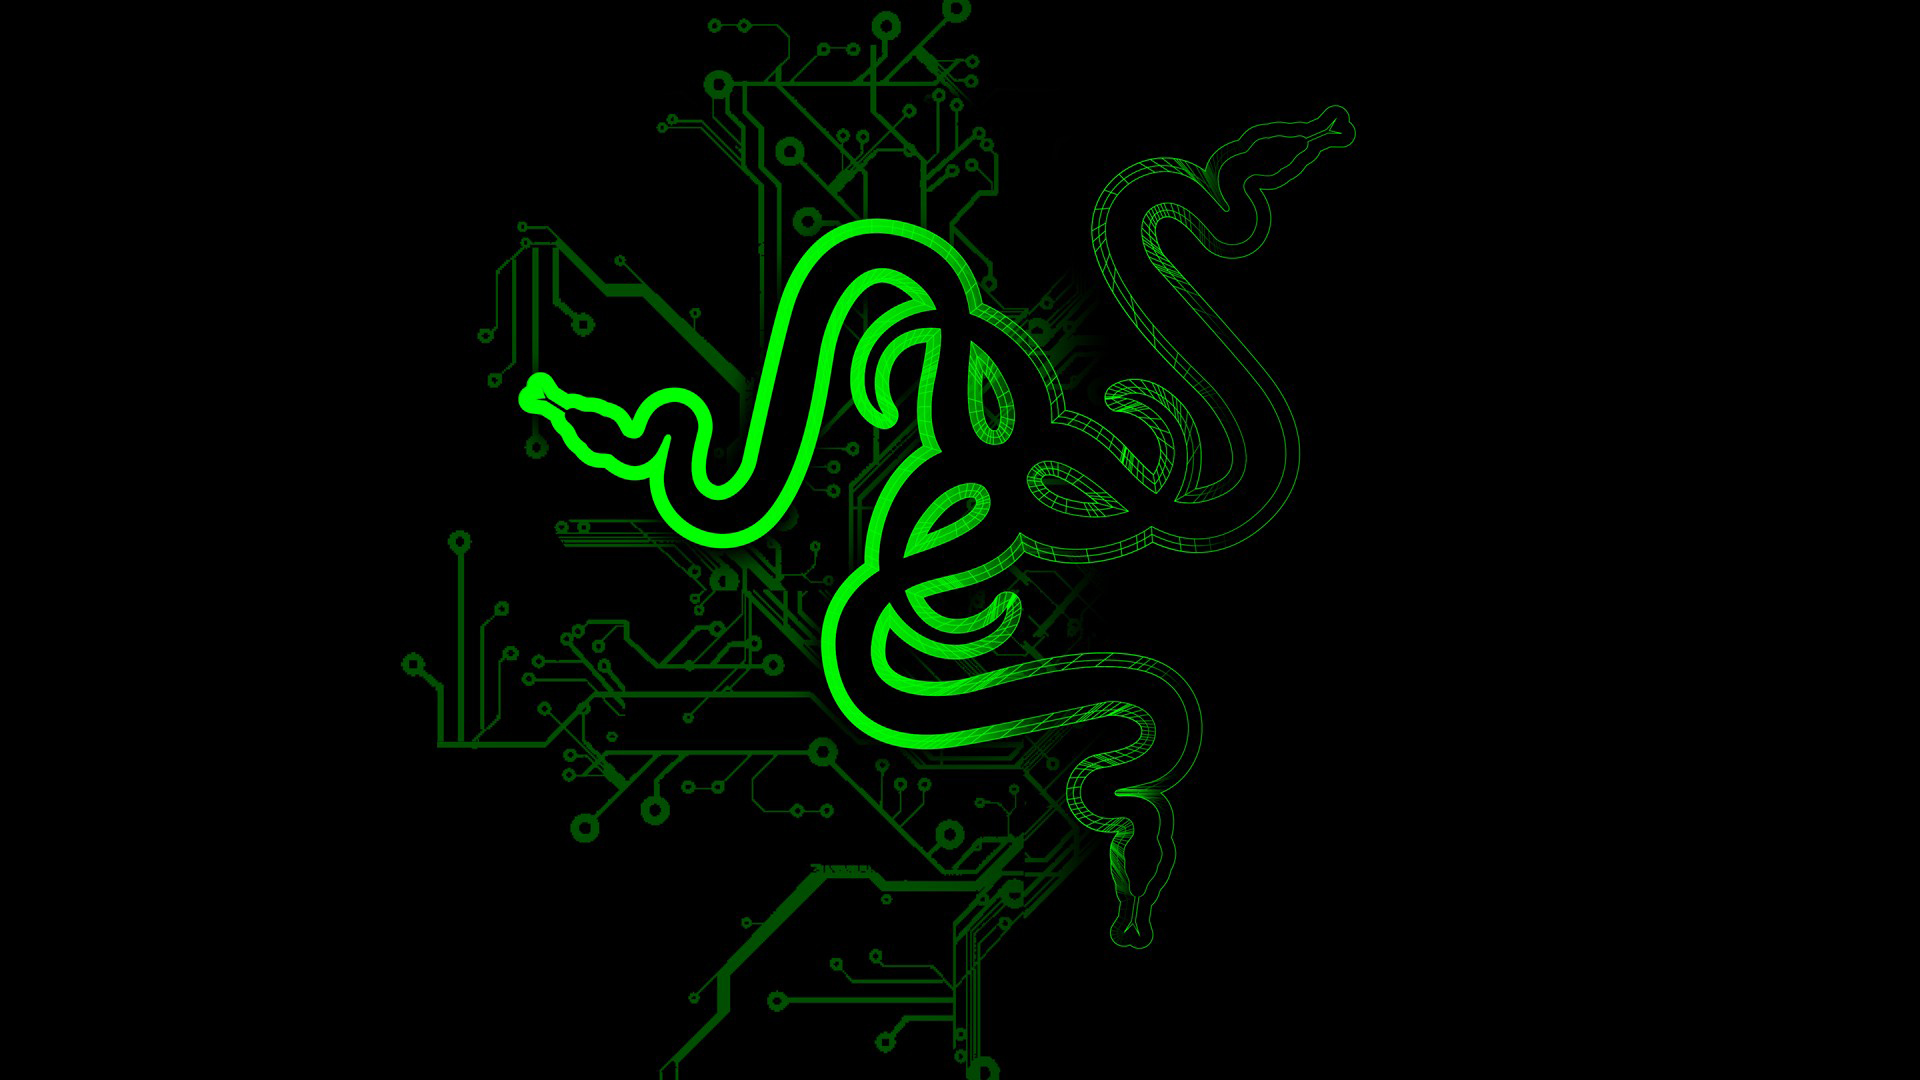 razer green logo circuit black background hd 1920x1080 1080p wallpaper